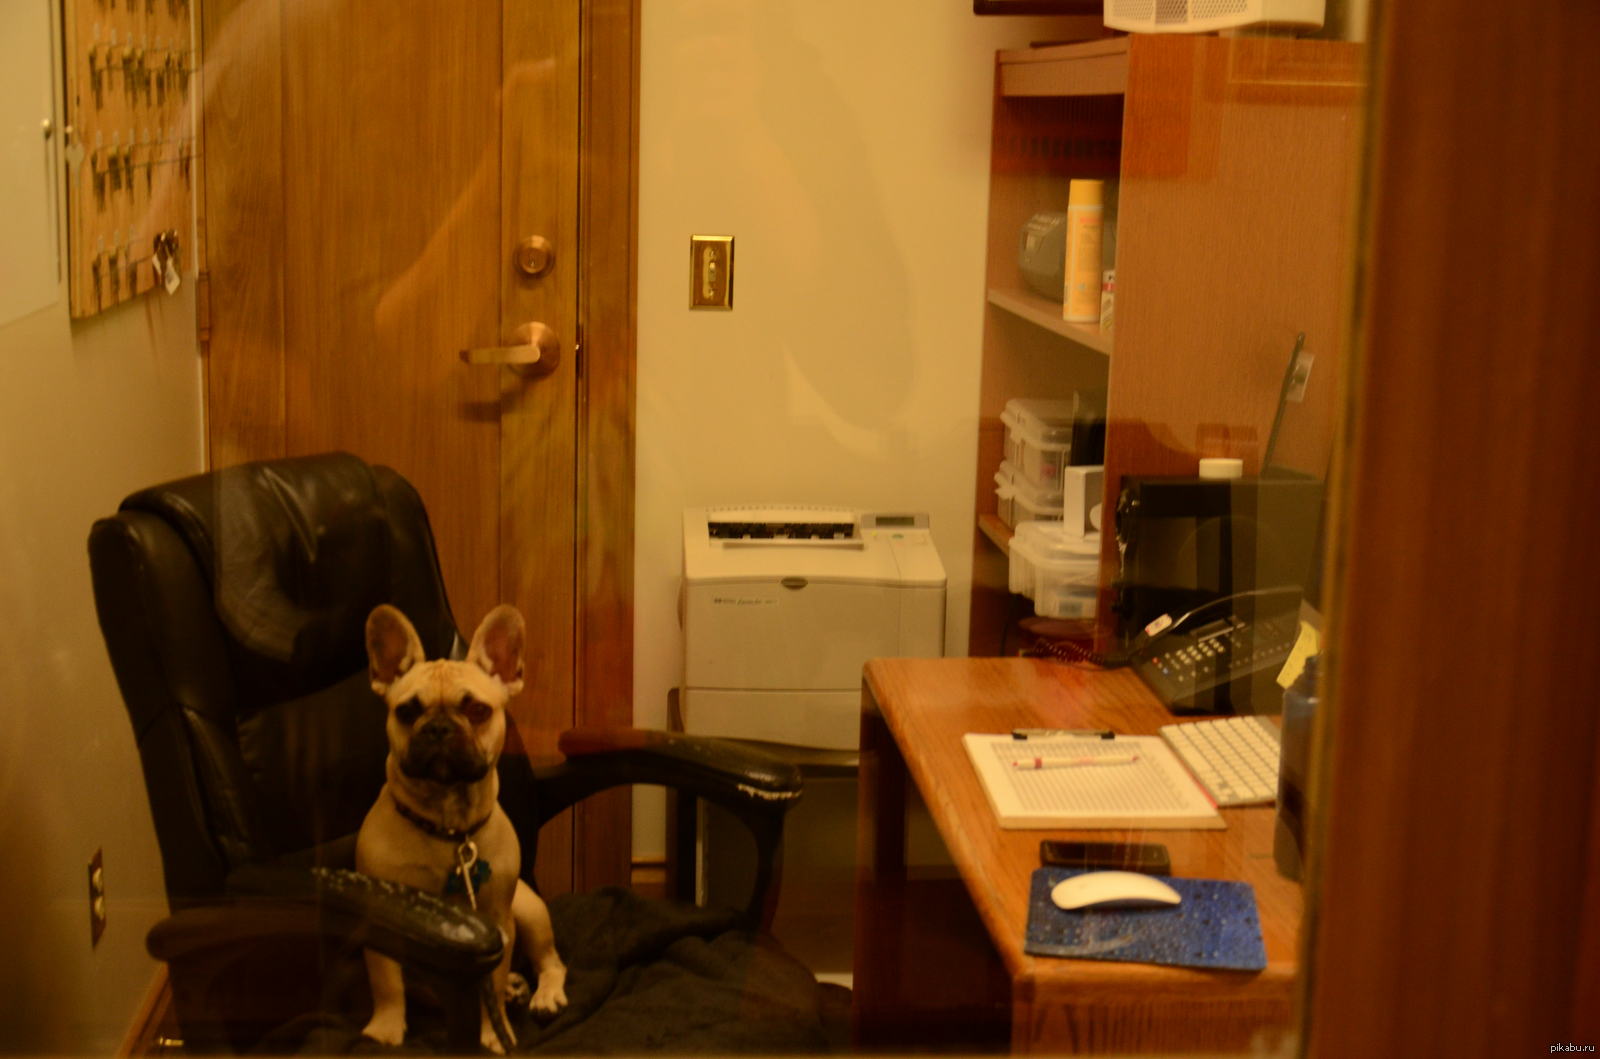 Watchman in a modern hostel - Dog, French Bulldog, Humor, Doorman, Dormitory